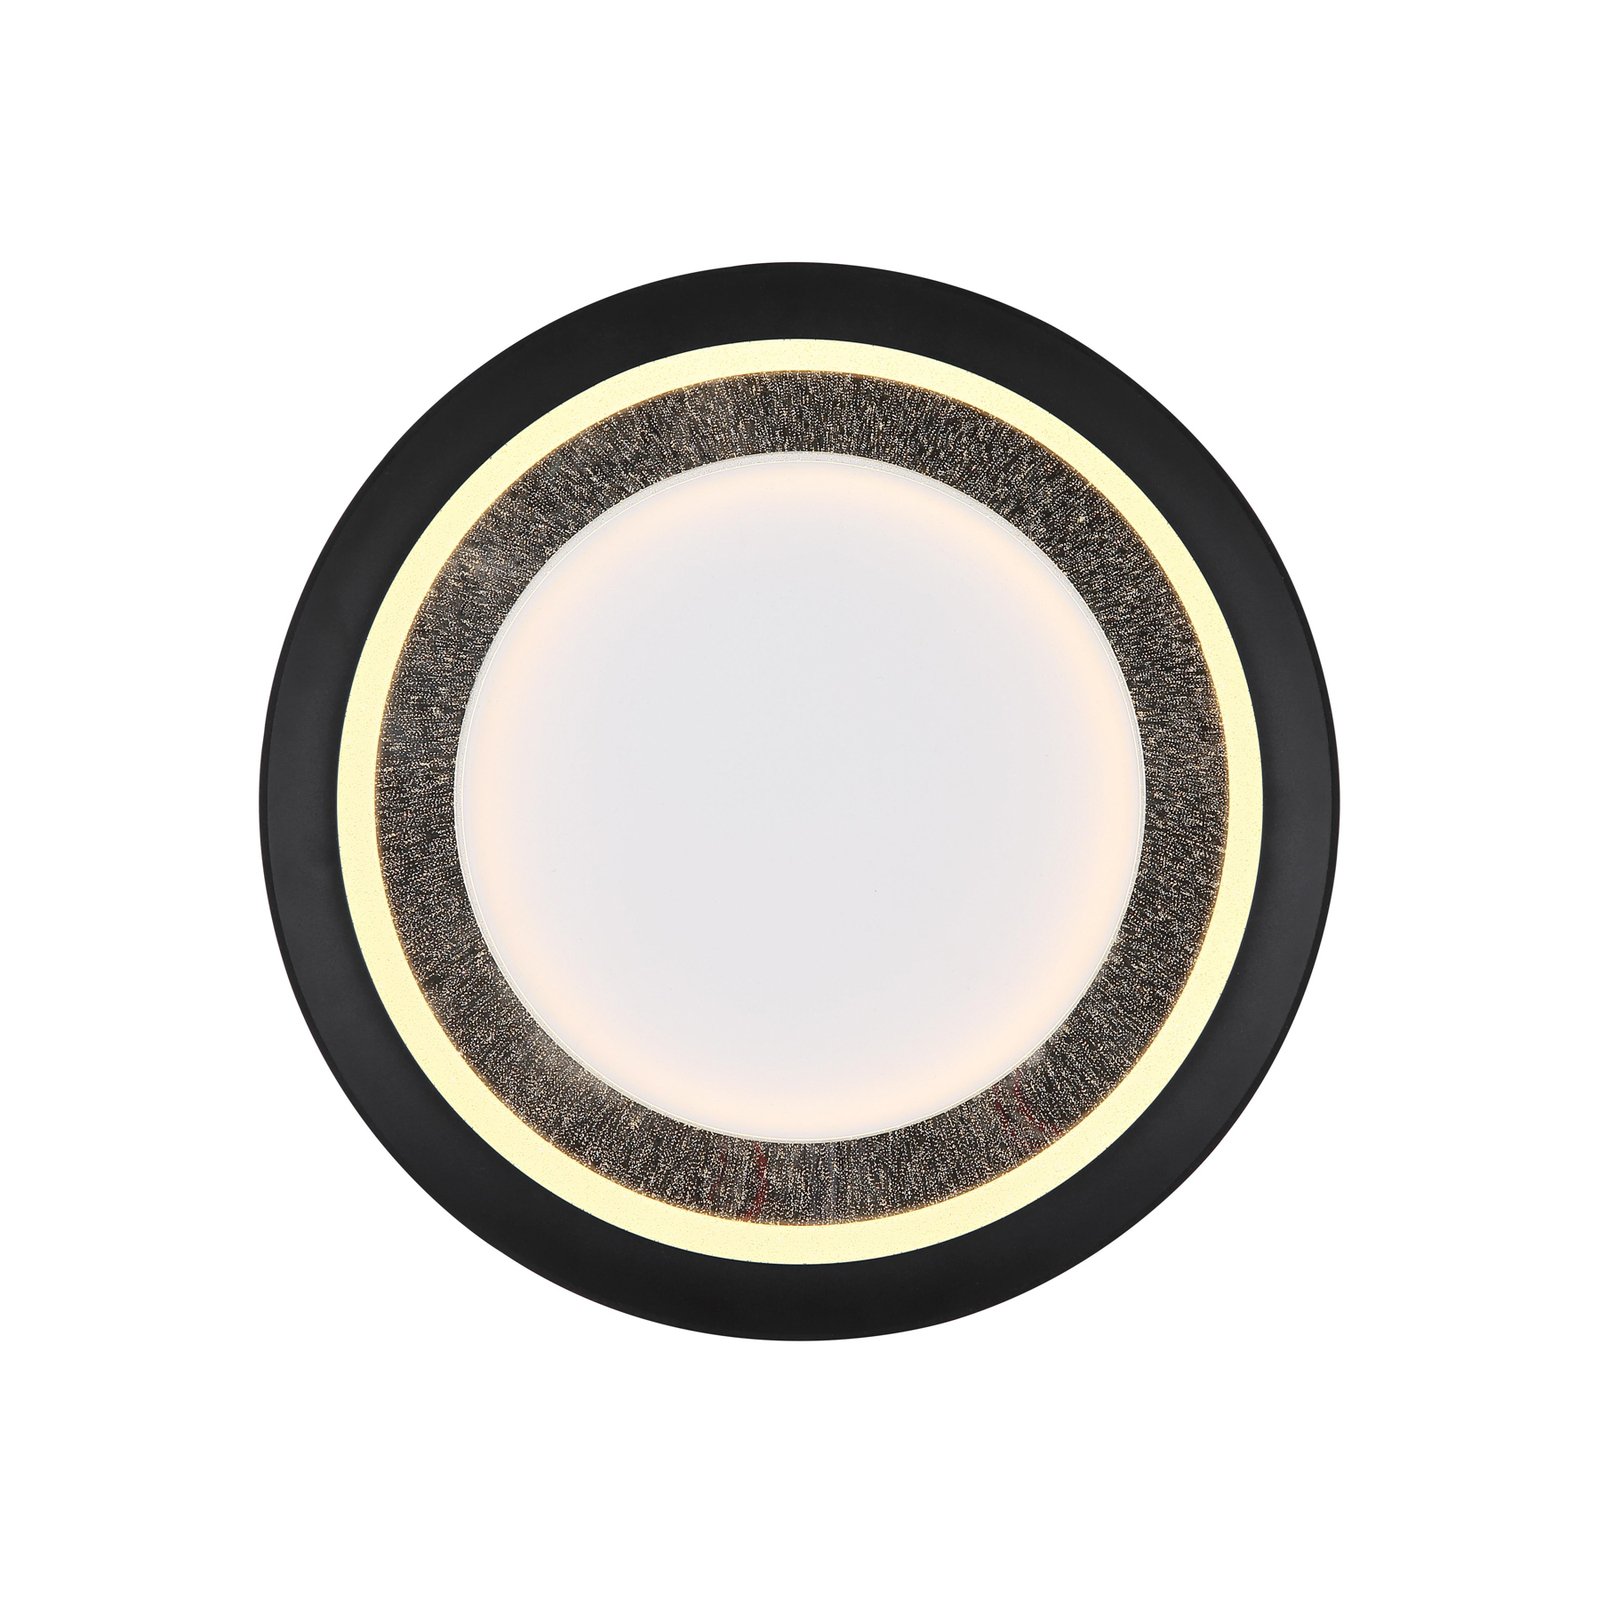 Clarino LED stropna svetilka, Ø 36 cm, črna/bela, akril